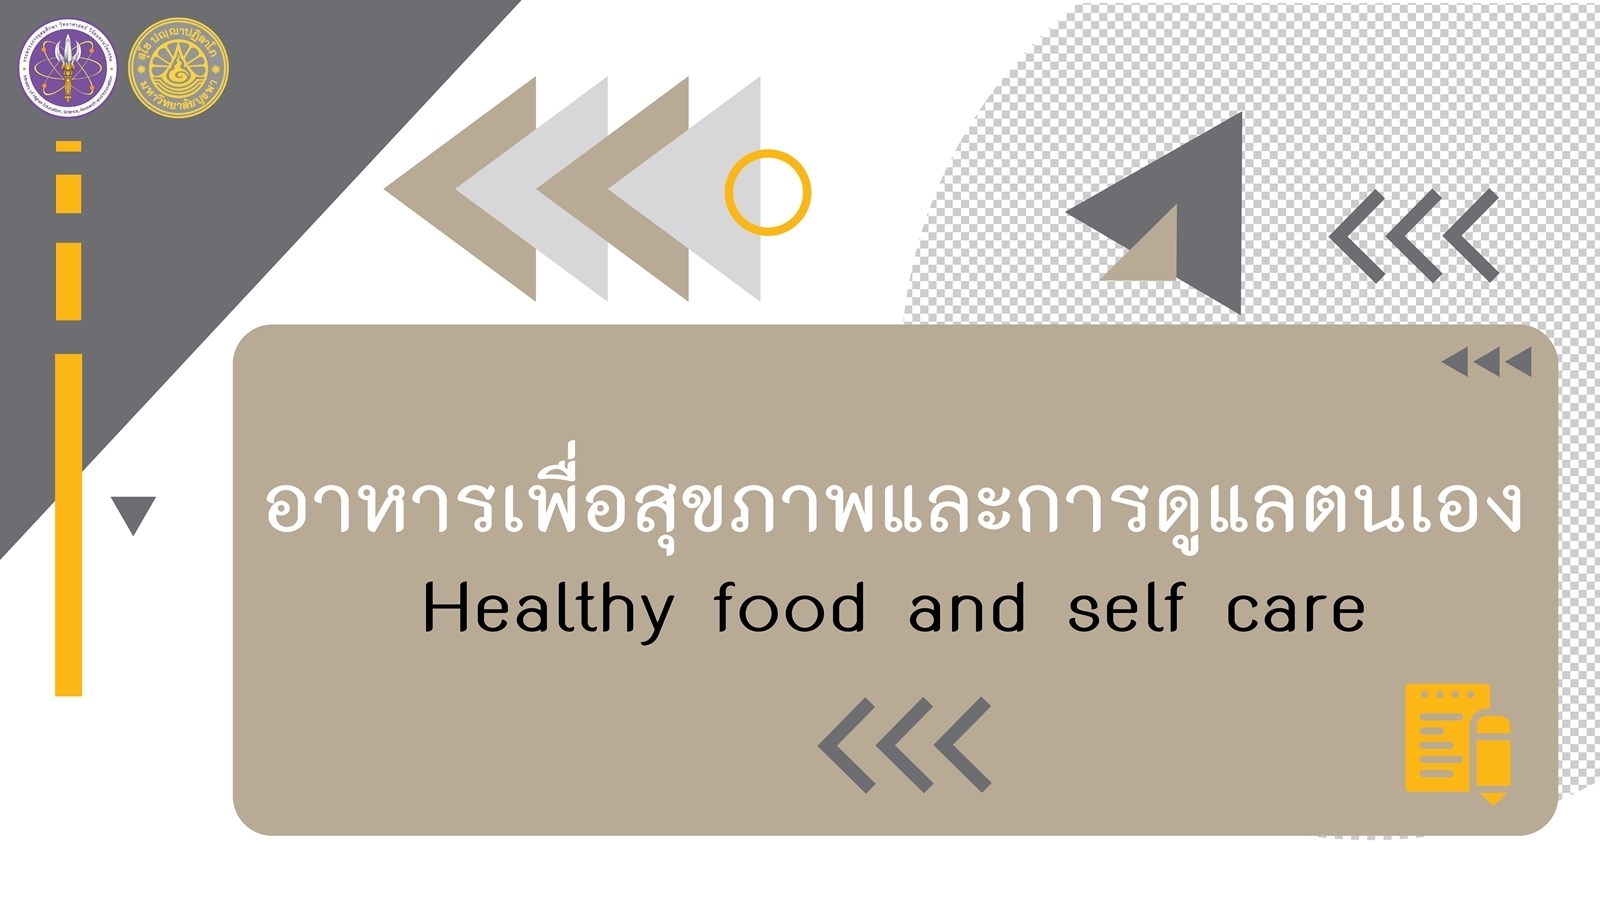 อาหารเพื่อสุขภาพ และ การดูแลตนเอง (Healthy Food and Self Care) Alliedhs001